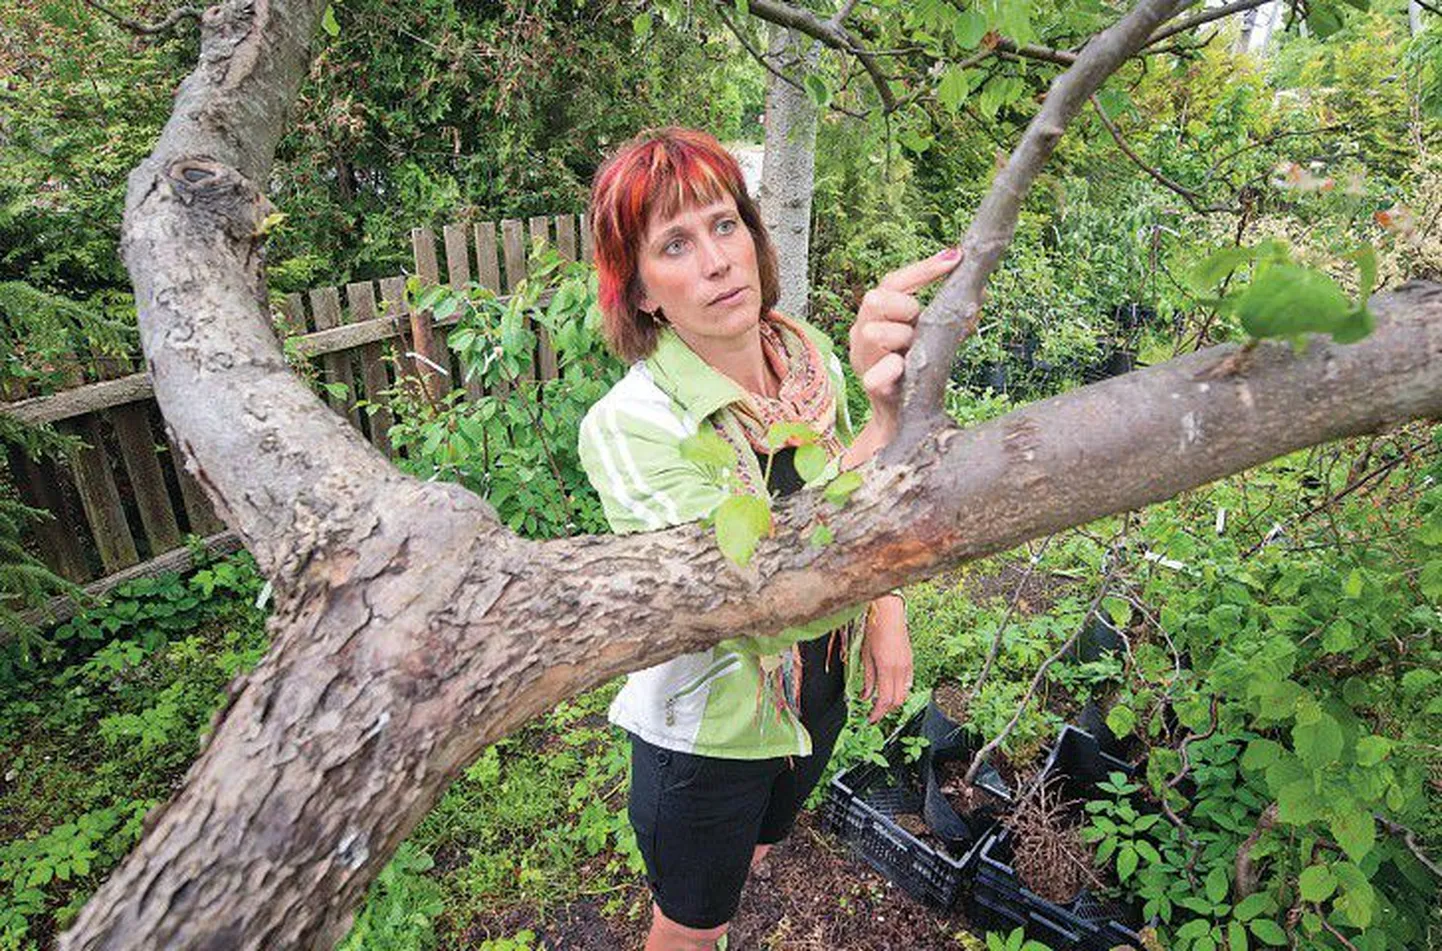 Вилго Вахесаар, хозяйка питомника Хальяссааре, показывает место привоя на дереве с семью сортами яблок.